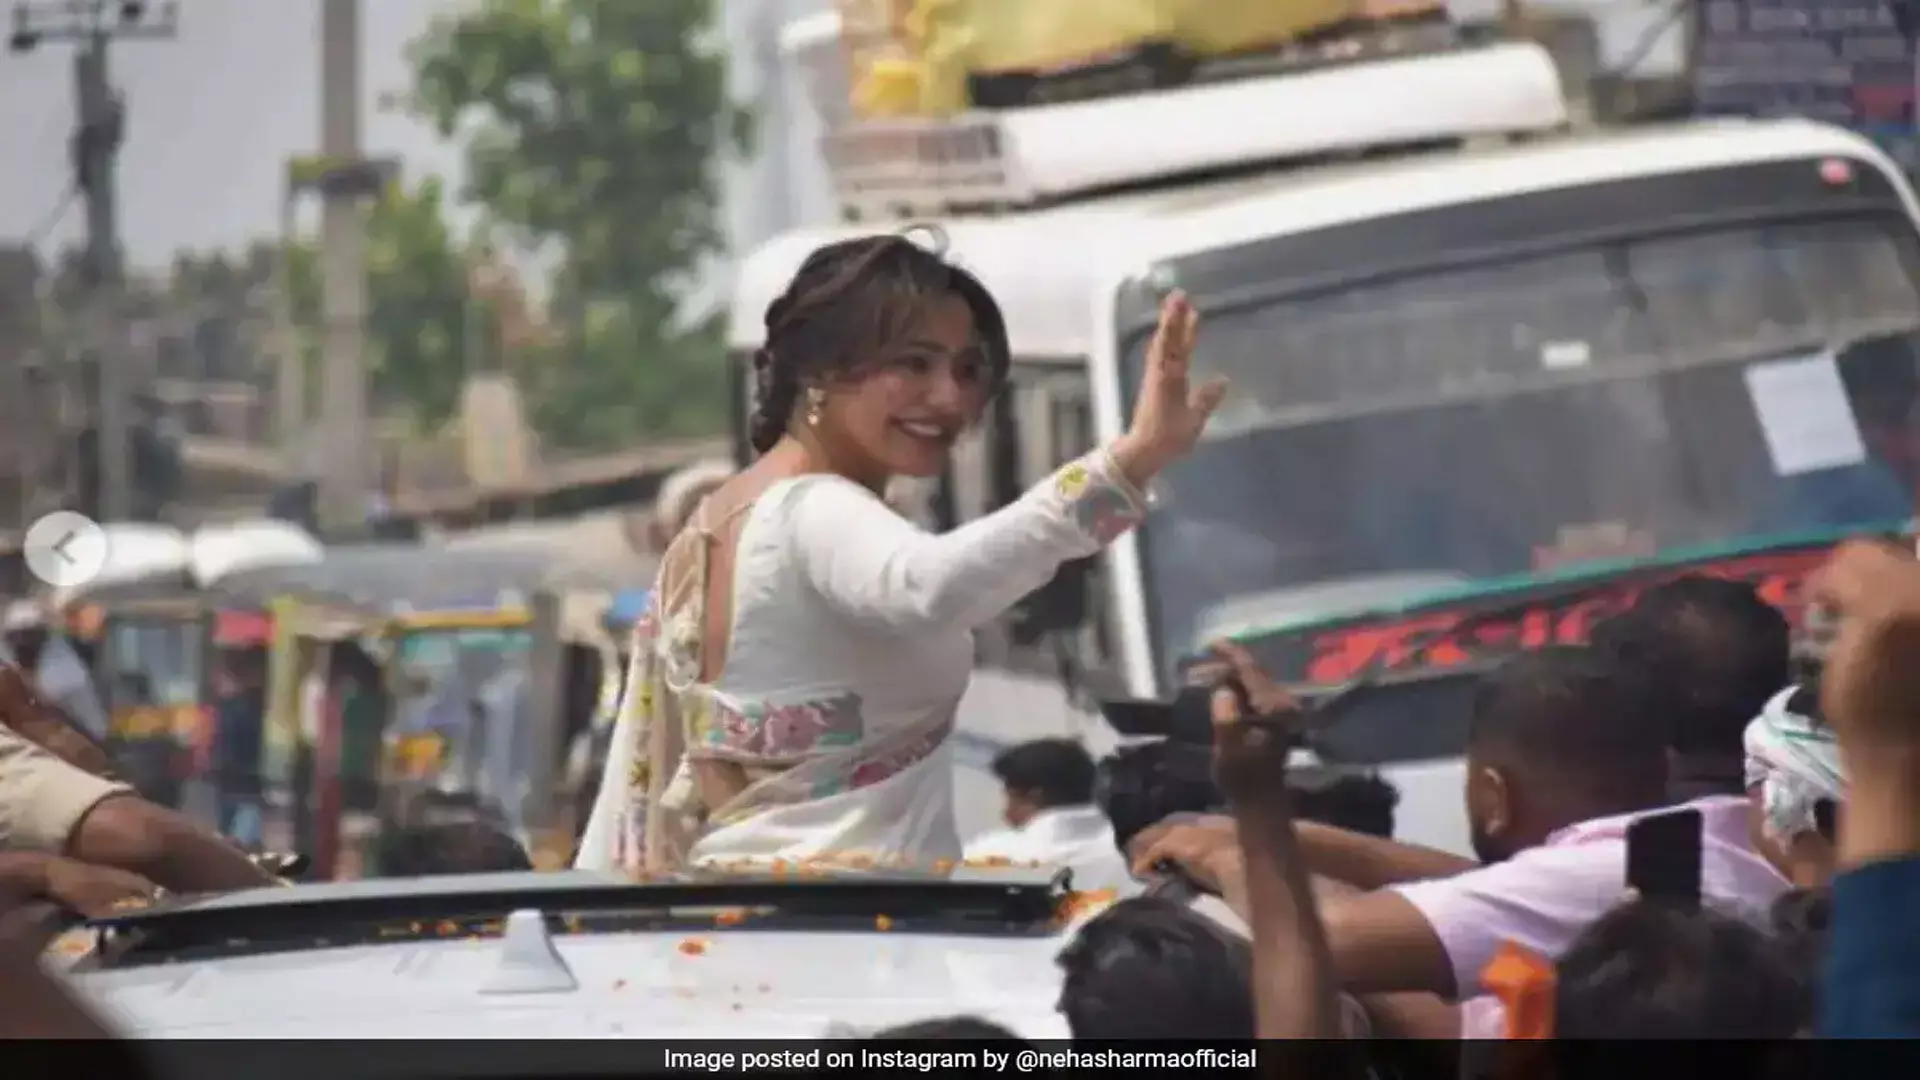 पिता के चुनावी डेब्यू के संकेत के बाद अभिनेत्री नेहा शर्मा ने मेगा रोड शो किया